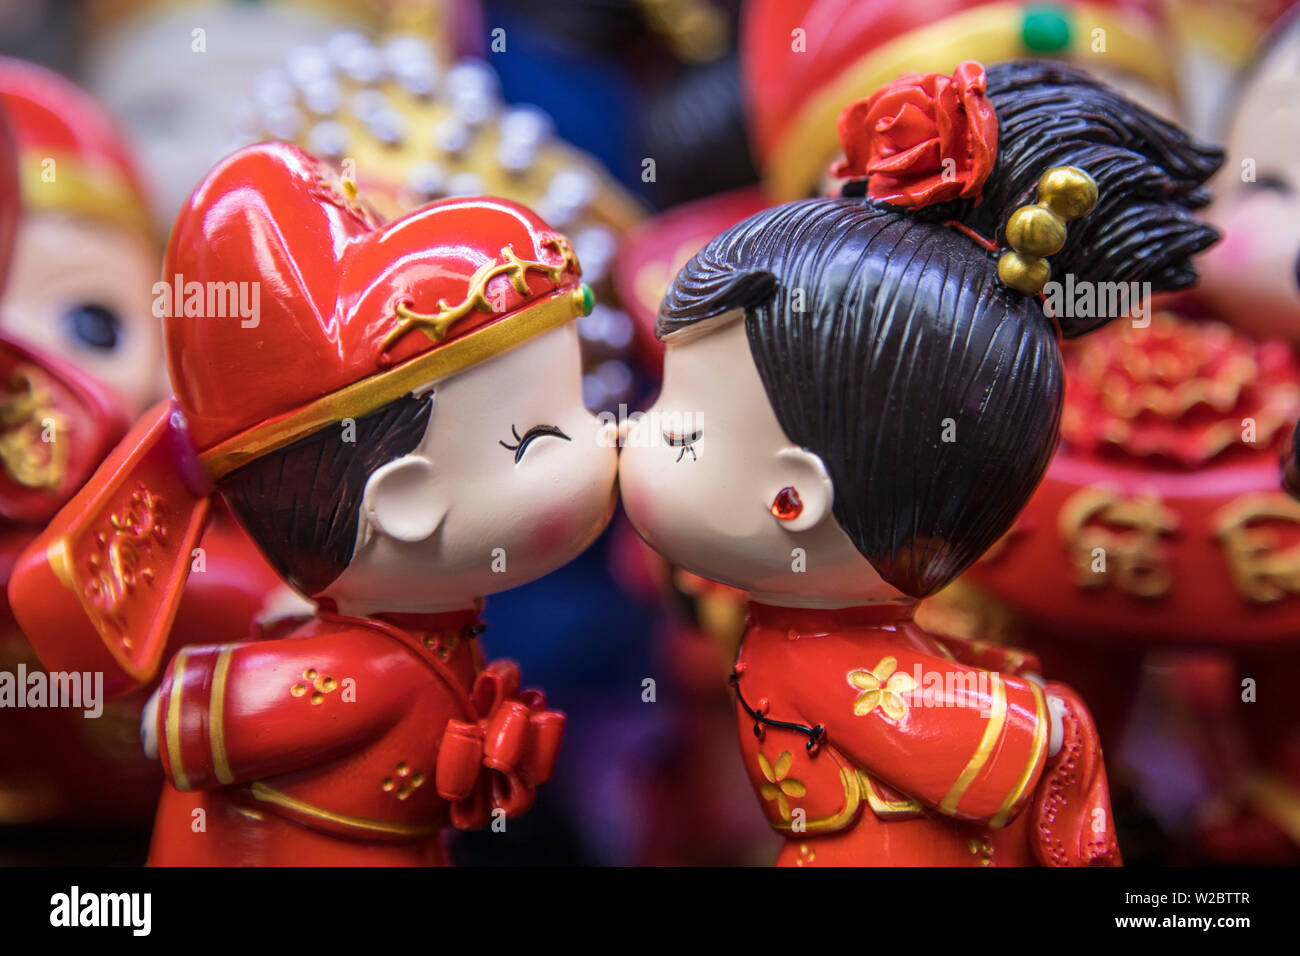 Un ragazzo e una ragazza baciare gli ornamenti, la vecchia città di mercato, Shanghai, Cina Foto Stock